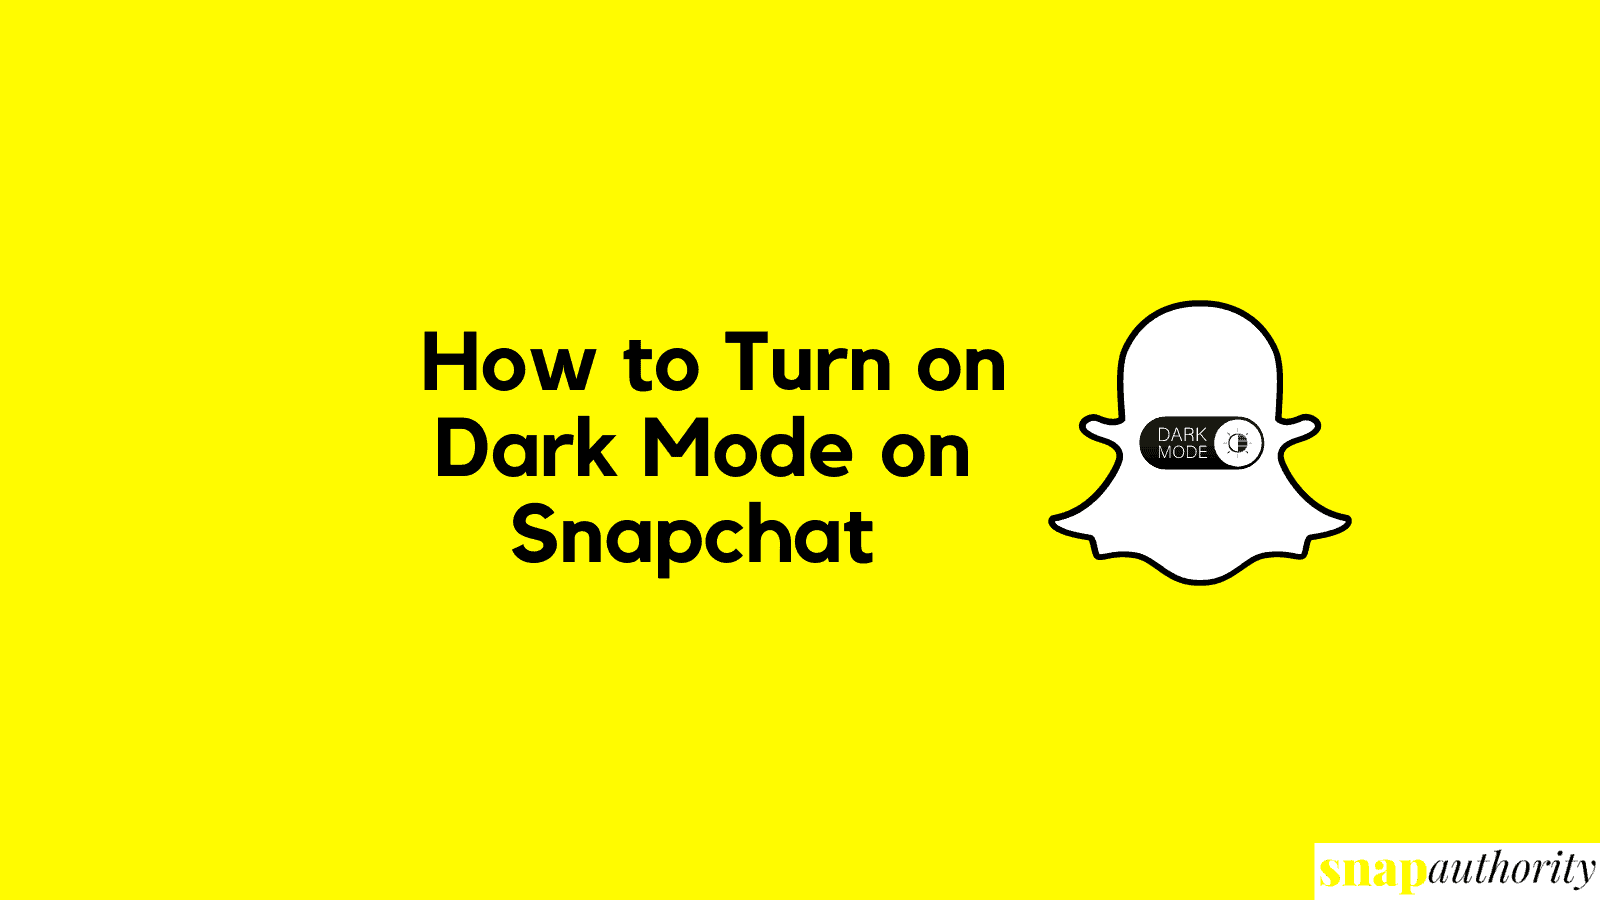 Turn on Dark Mode in Snapchat